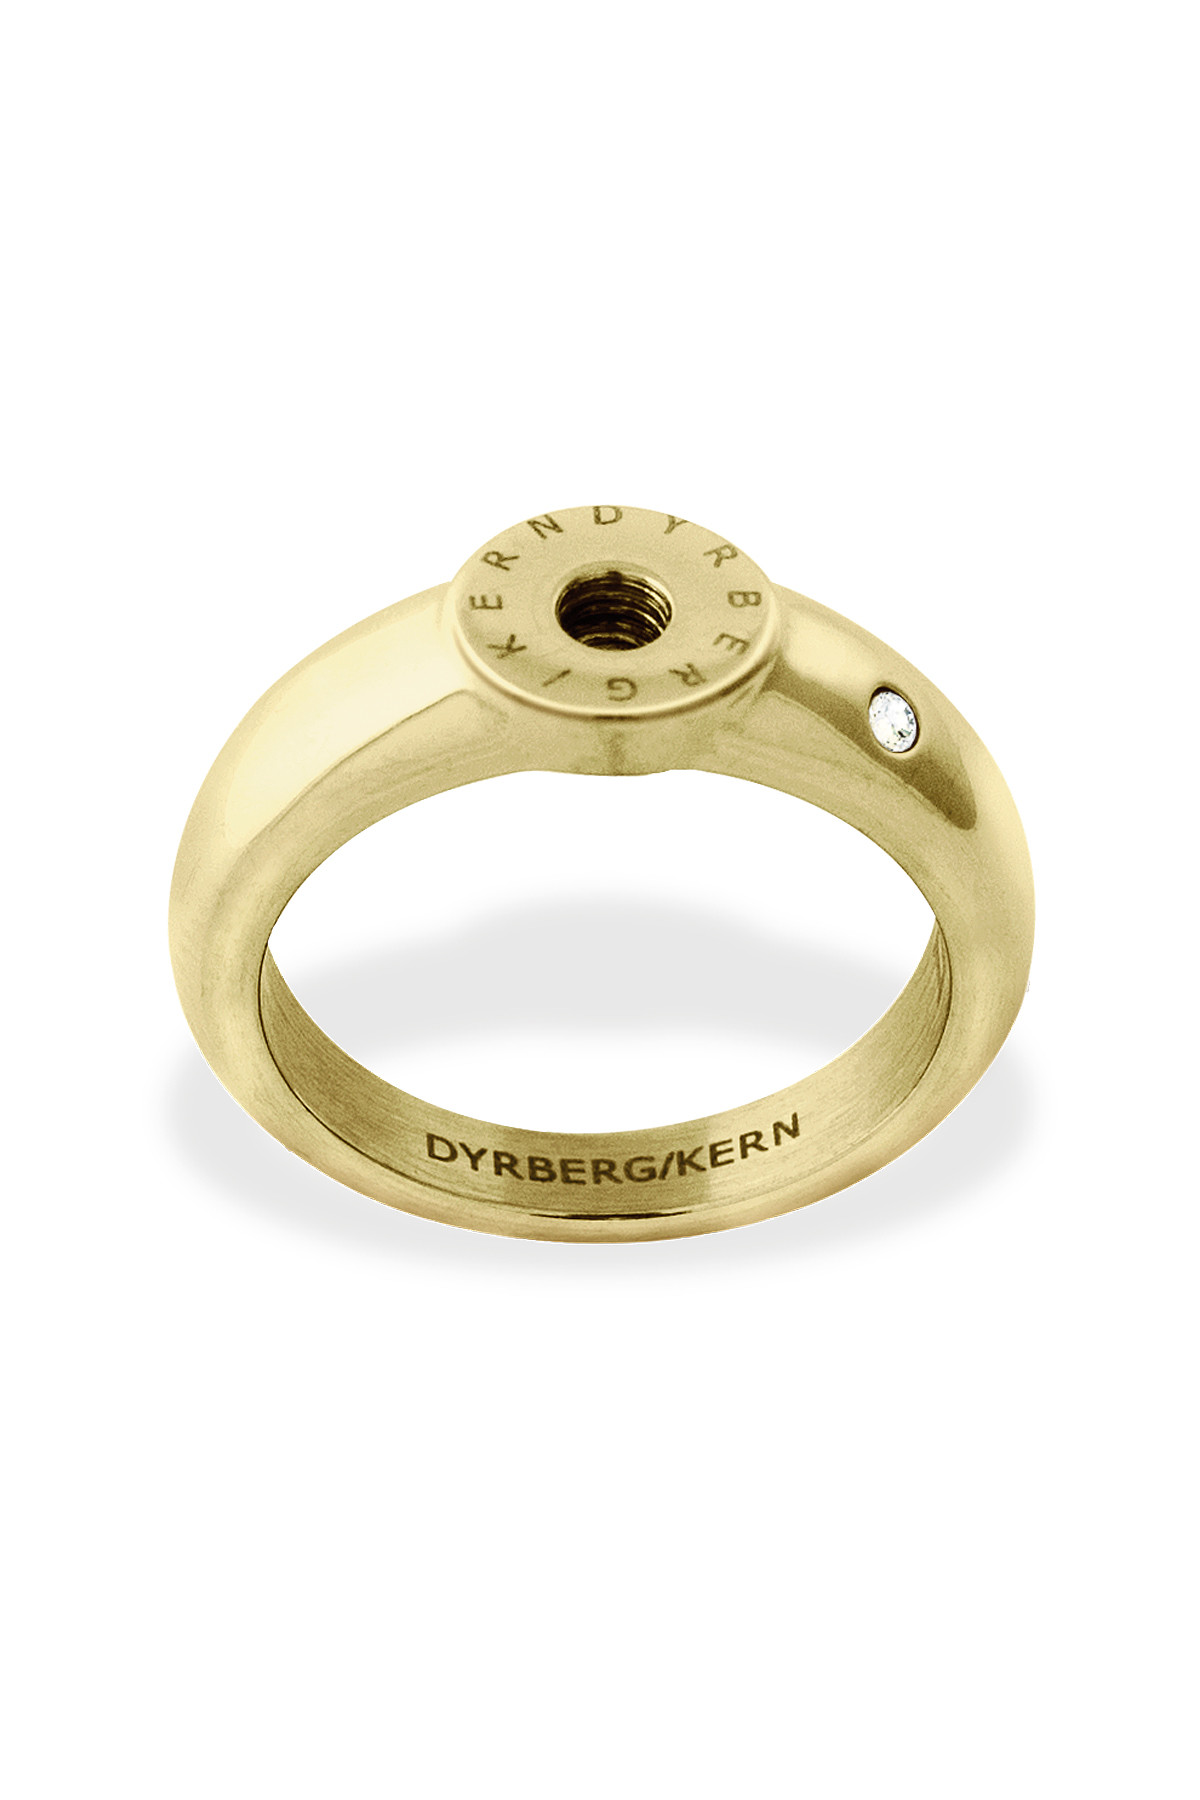 Billede af Dyrberg/Kern Ring Ring, Farve: Guld, Størrelse: IIII/60, Dame